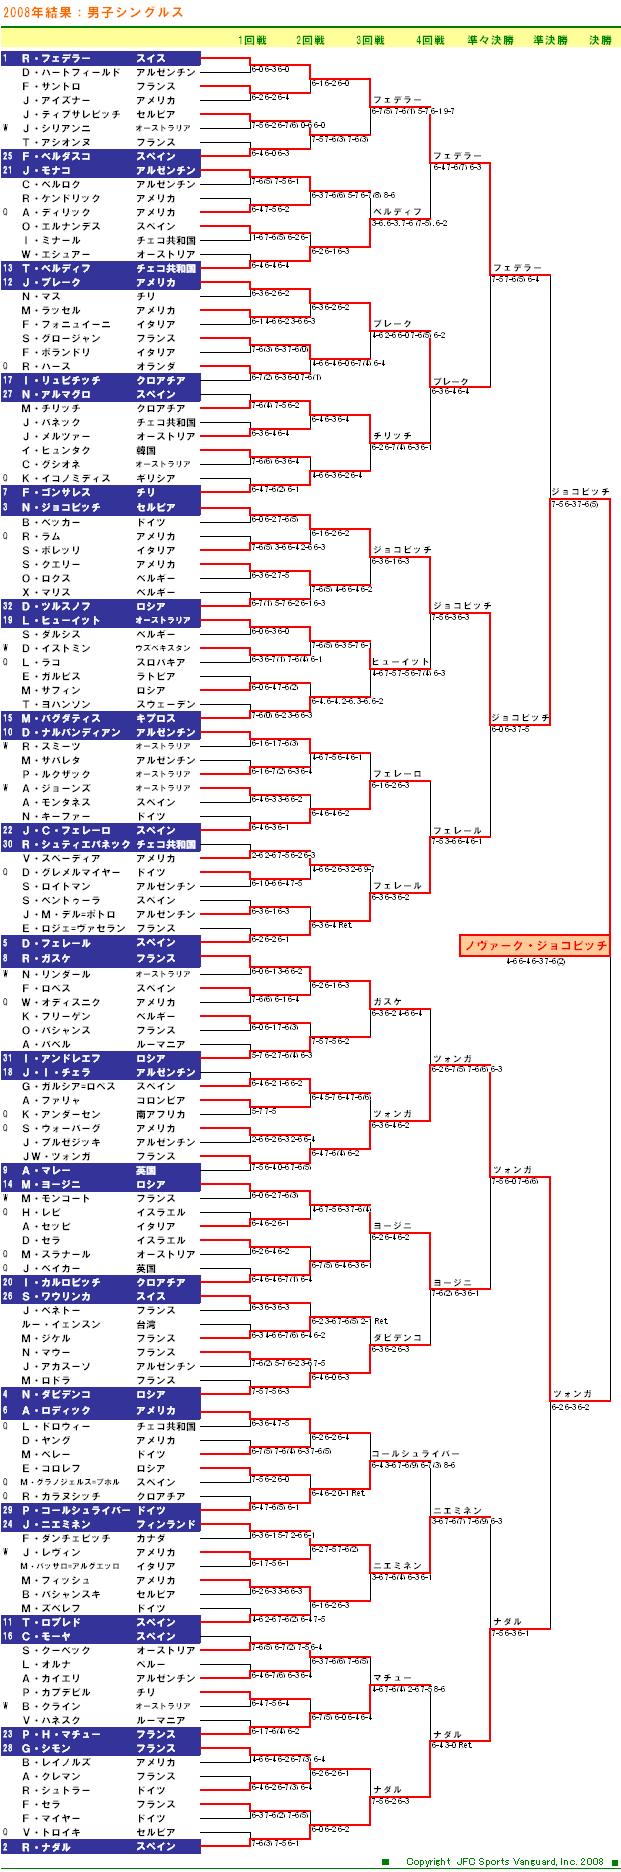 全豪オープンテニス2008　男子シングルスドロー表